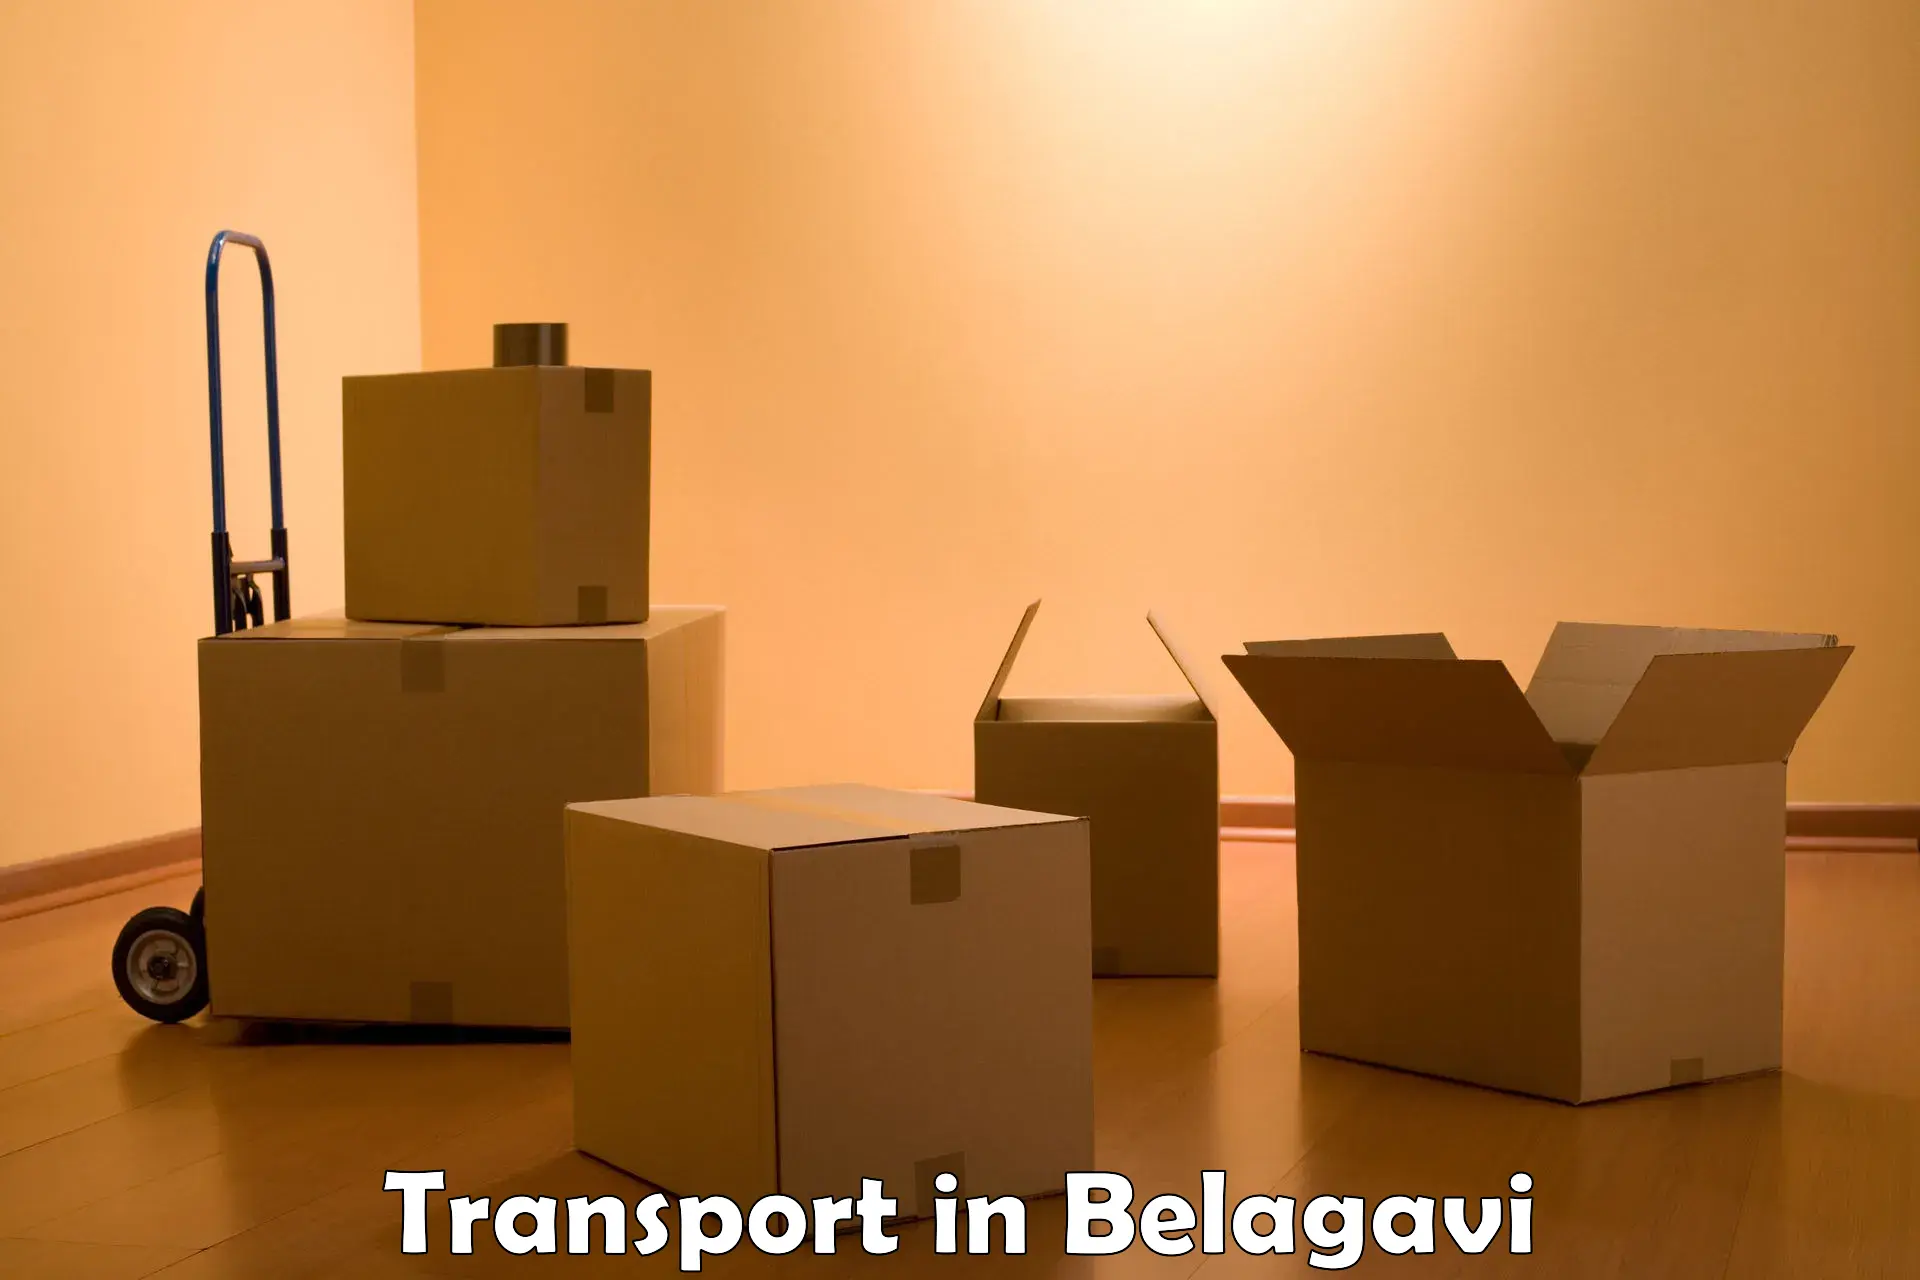 Parcel transport services in Belagavi